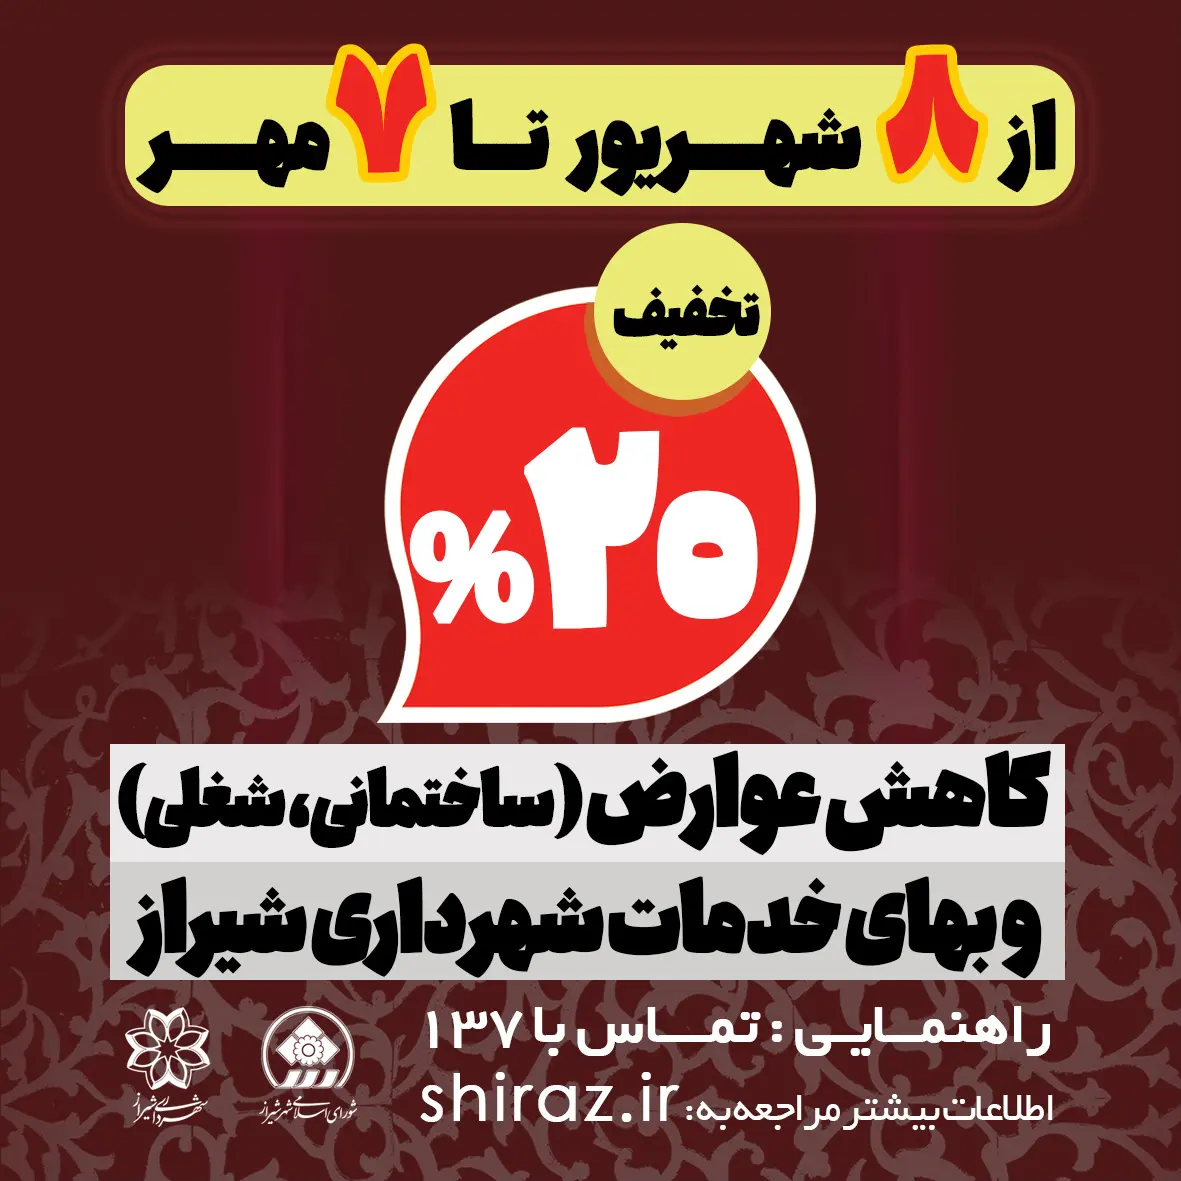 استفاده از ٢٠ درصد کاهش پرداخت نقدی عوارض ساختمانی در شیراز